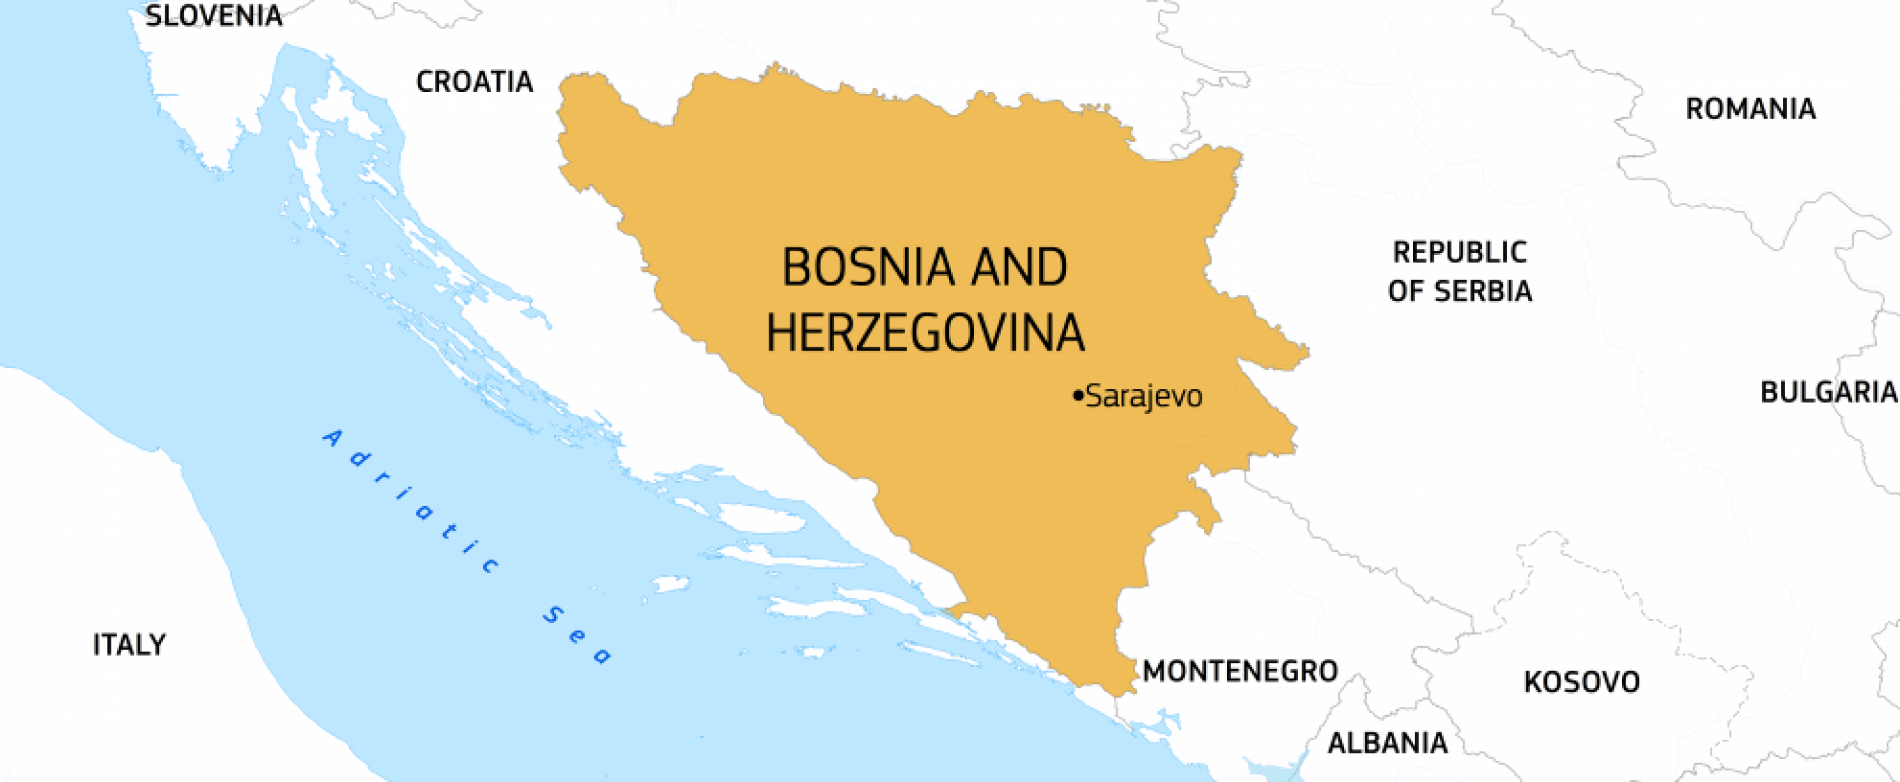 BOSNA u prethodnoj godini imala veći rast BDP-od Bugarske i ‘Otvoreni Balkan’ zemalja (Srb., Alb., Mak.)